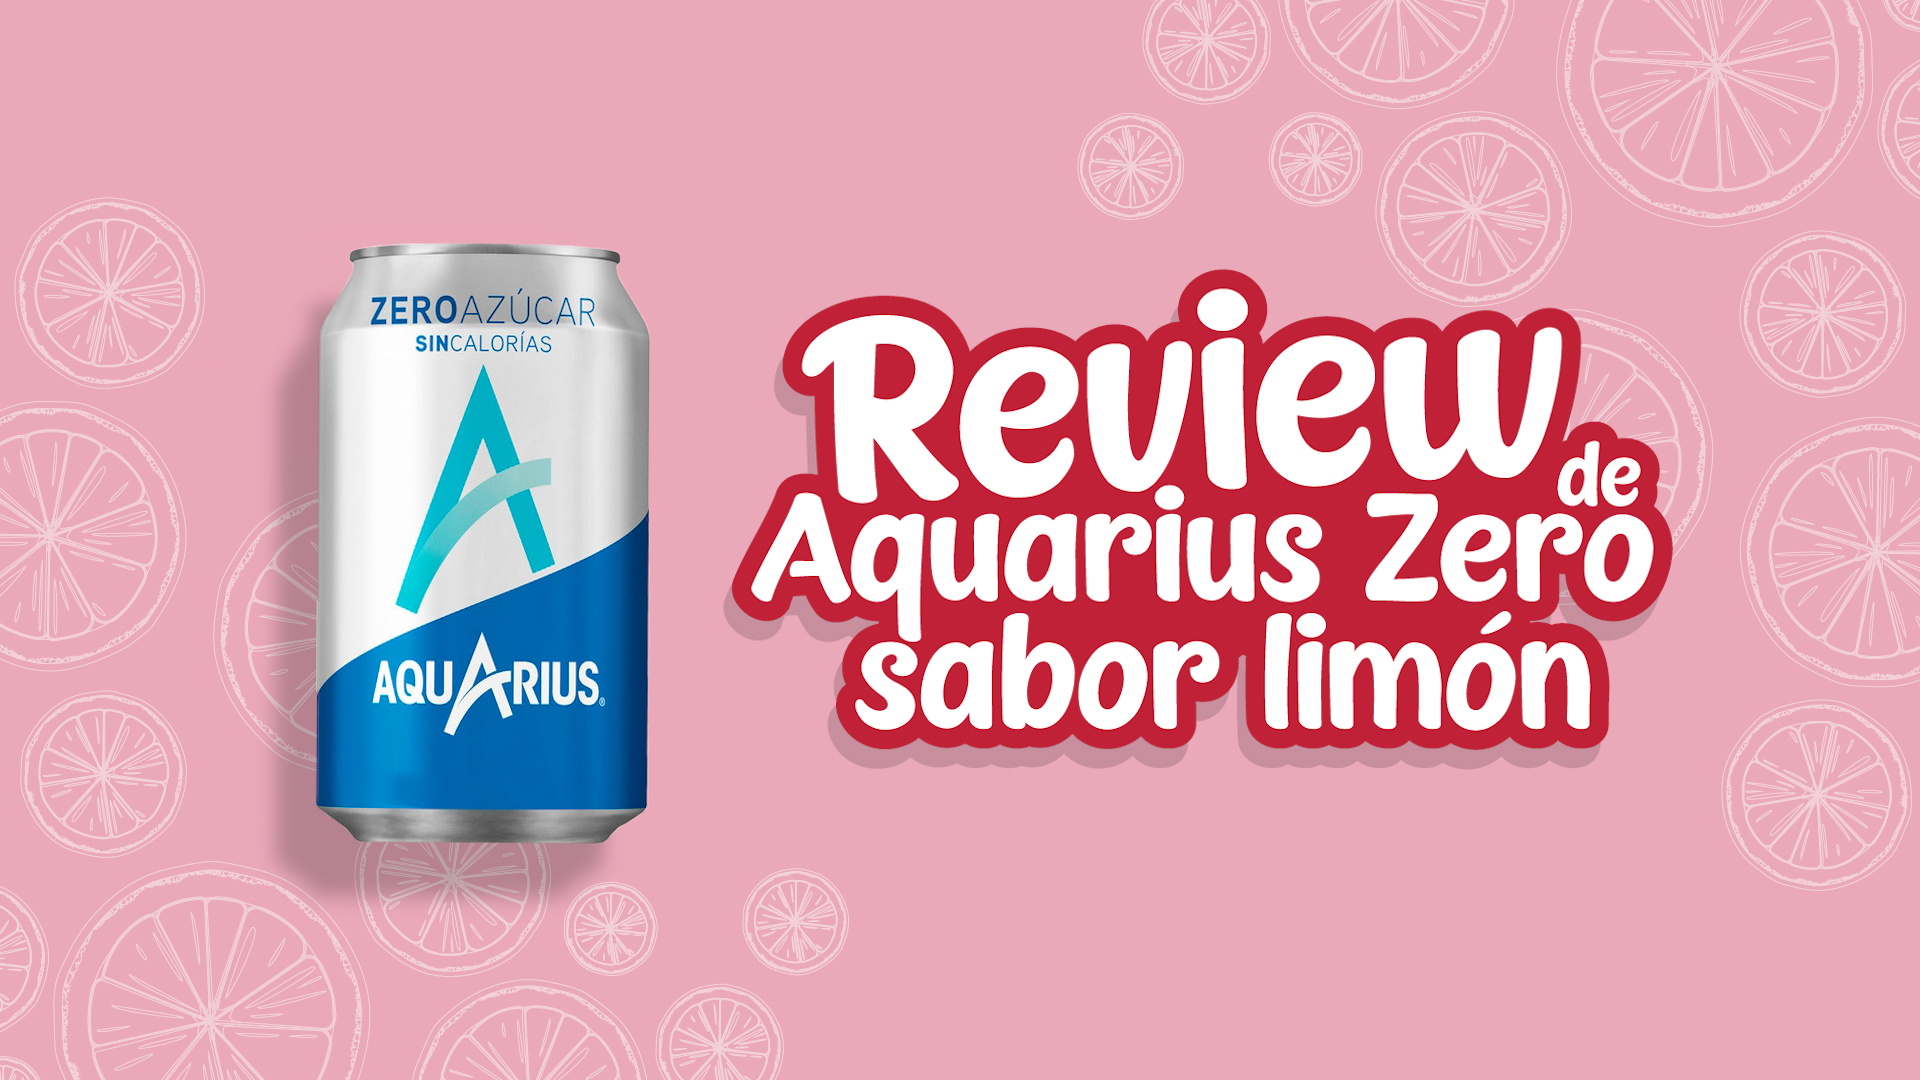 Opiniones de Aquarius zero sabor limón - Review de Aquarius zero sabor limón